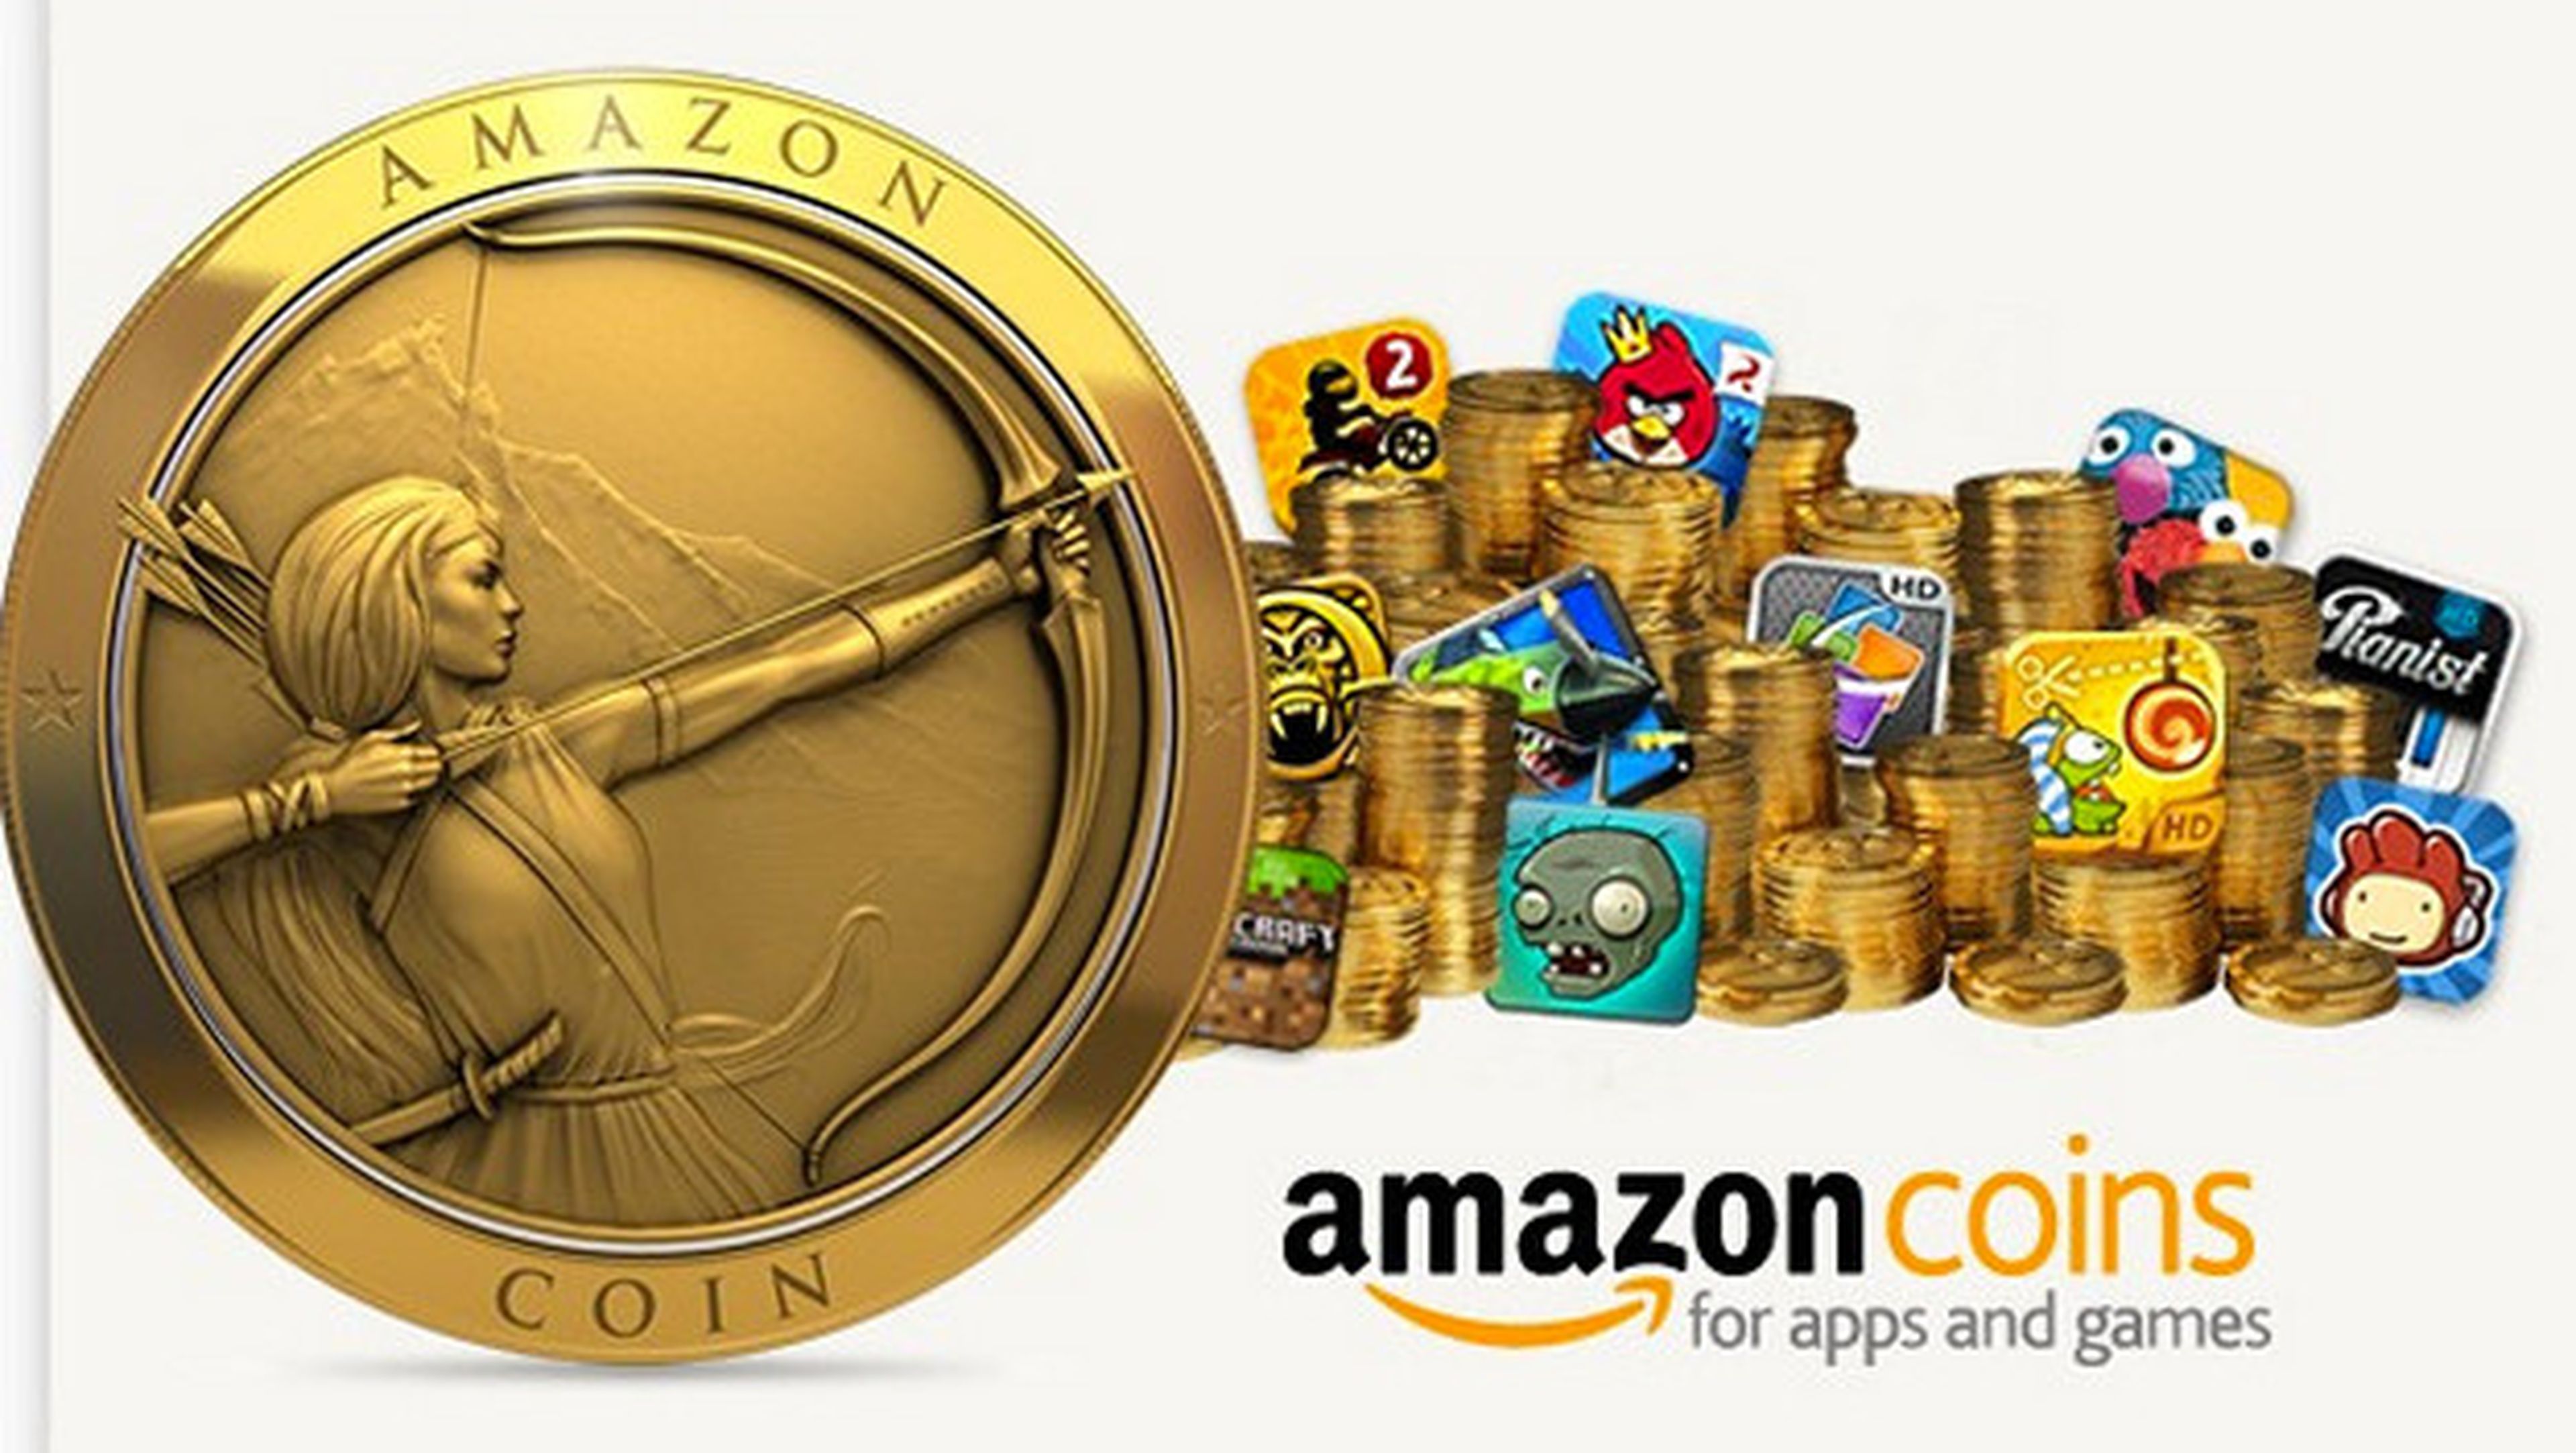 Cómo ahorrar con las ofertas del Black Friday en Amazon gracias a sus pack de Amazon Coins.